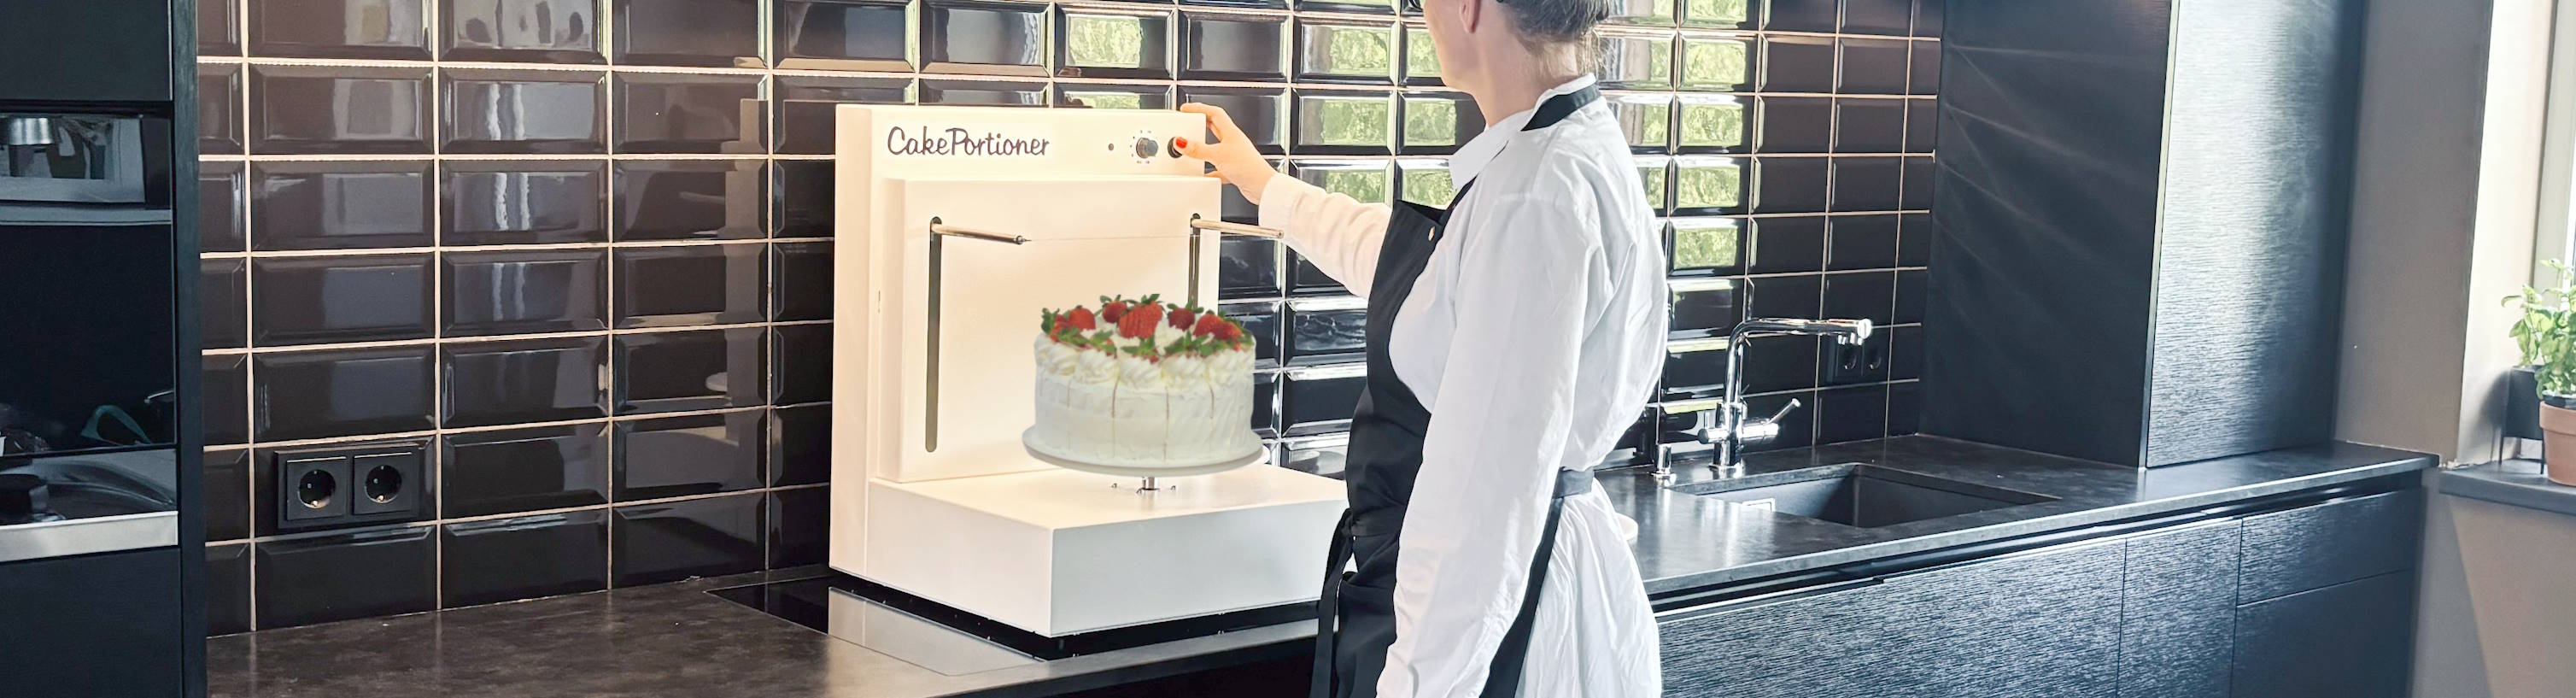 Cutting Cake in 60 Seconds! - CakePortioner Cake Cutting Machine